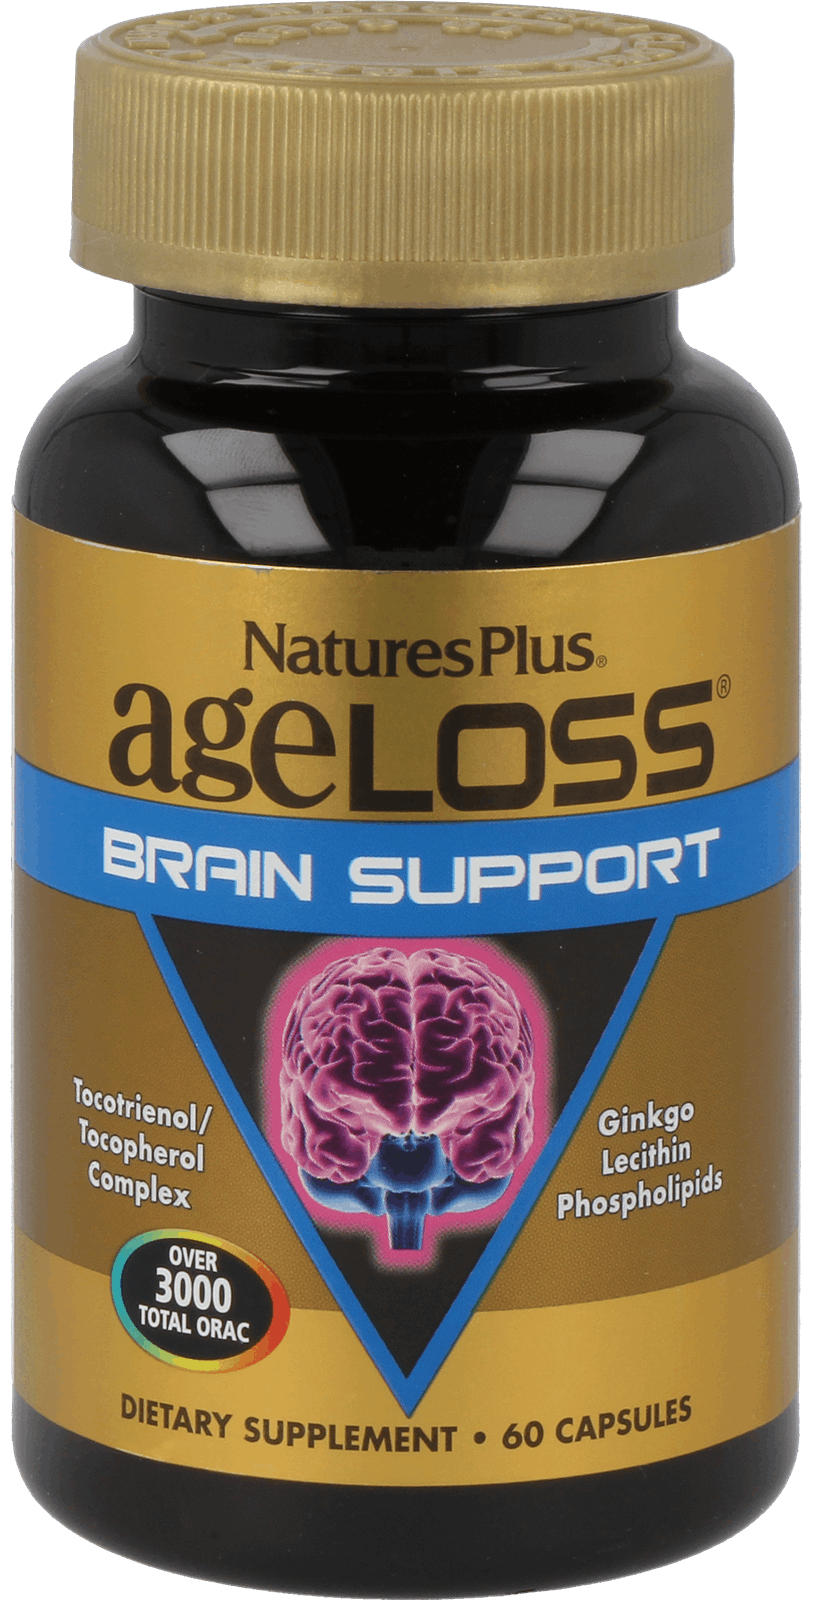 AgeLoss Brain Support 